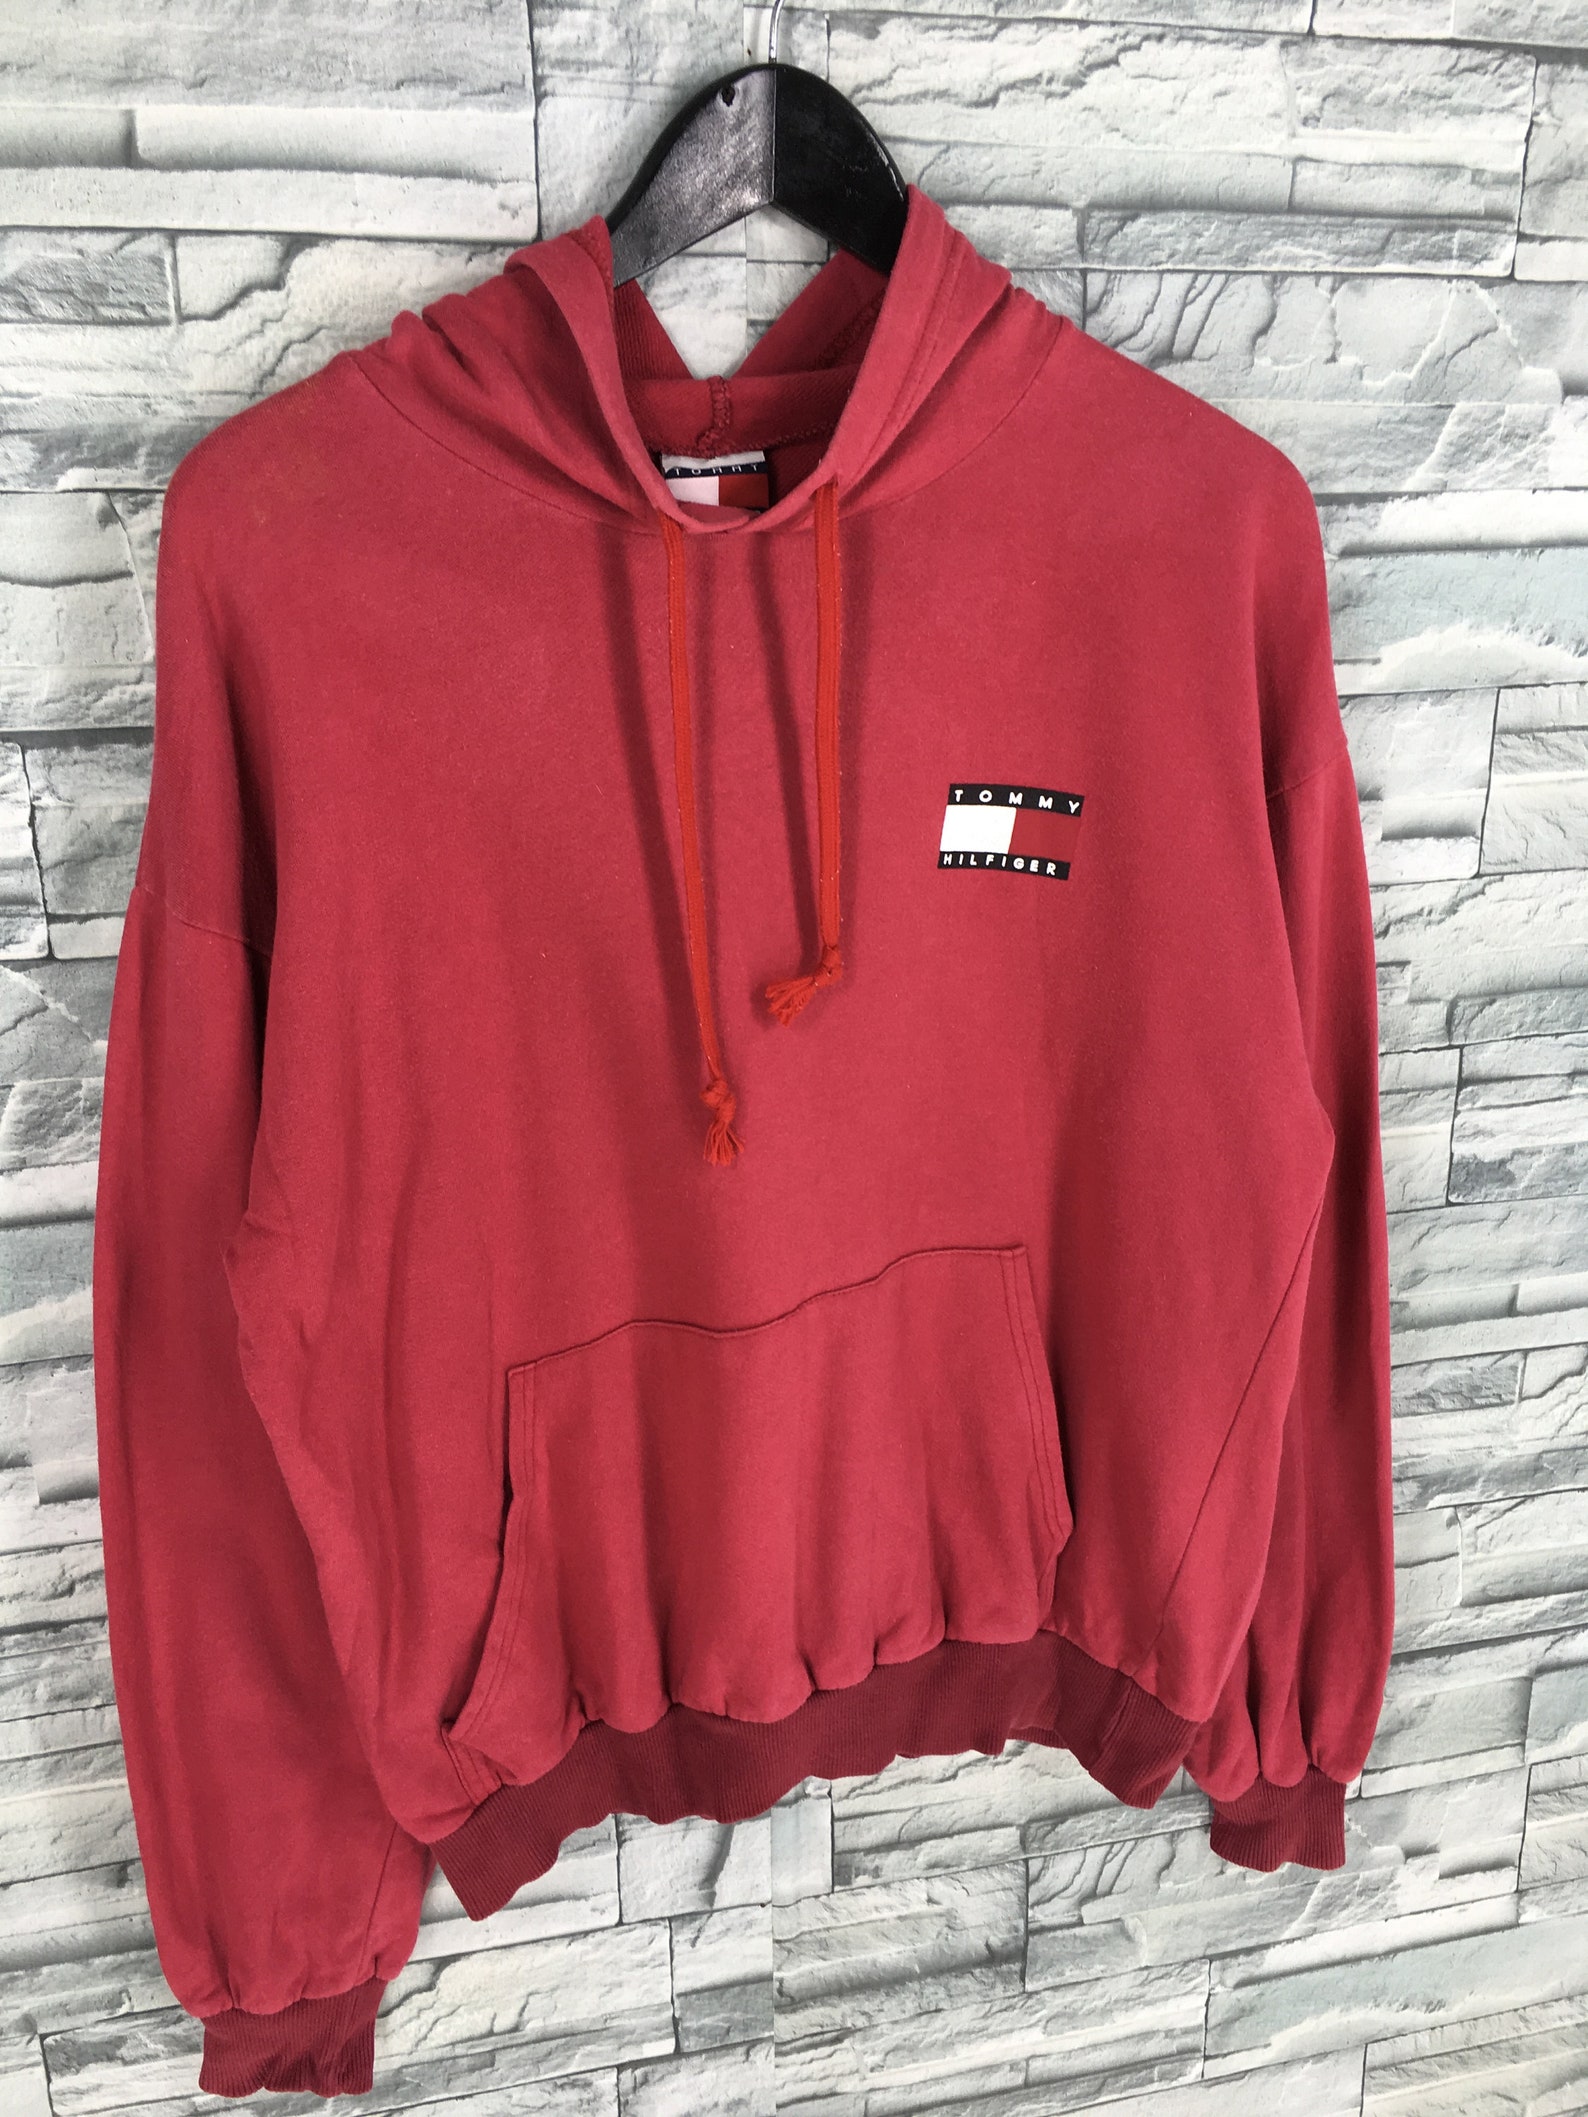 TOMMY HILFIGER Sweatshirt Red Hoodie Medium Vintage 90's | Etsy